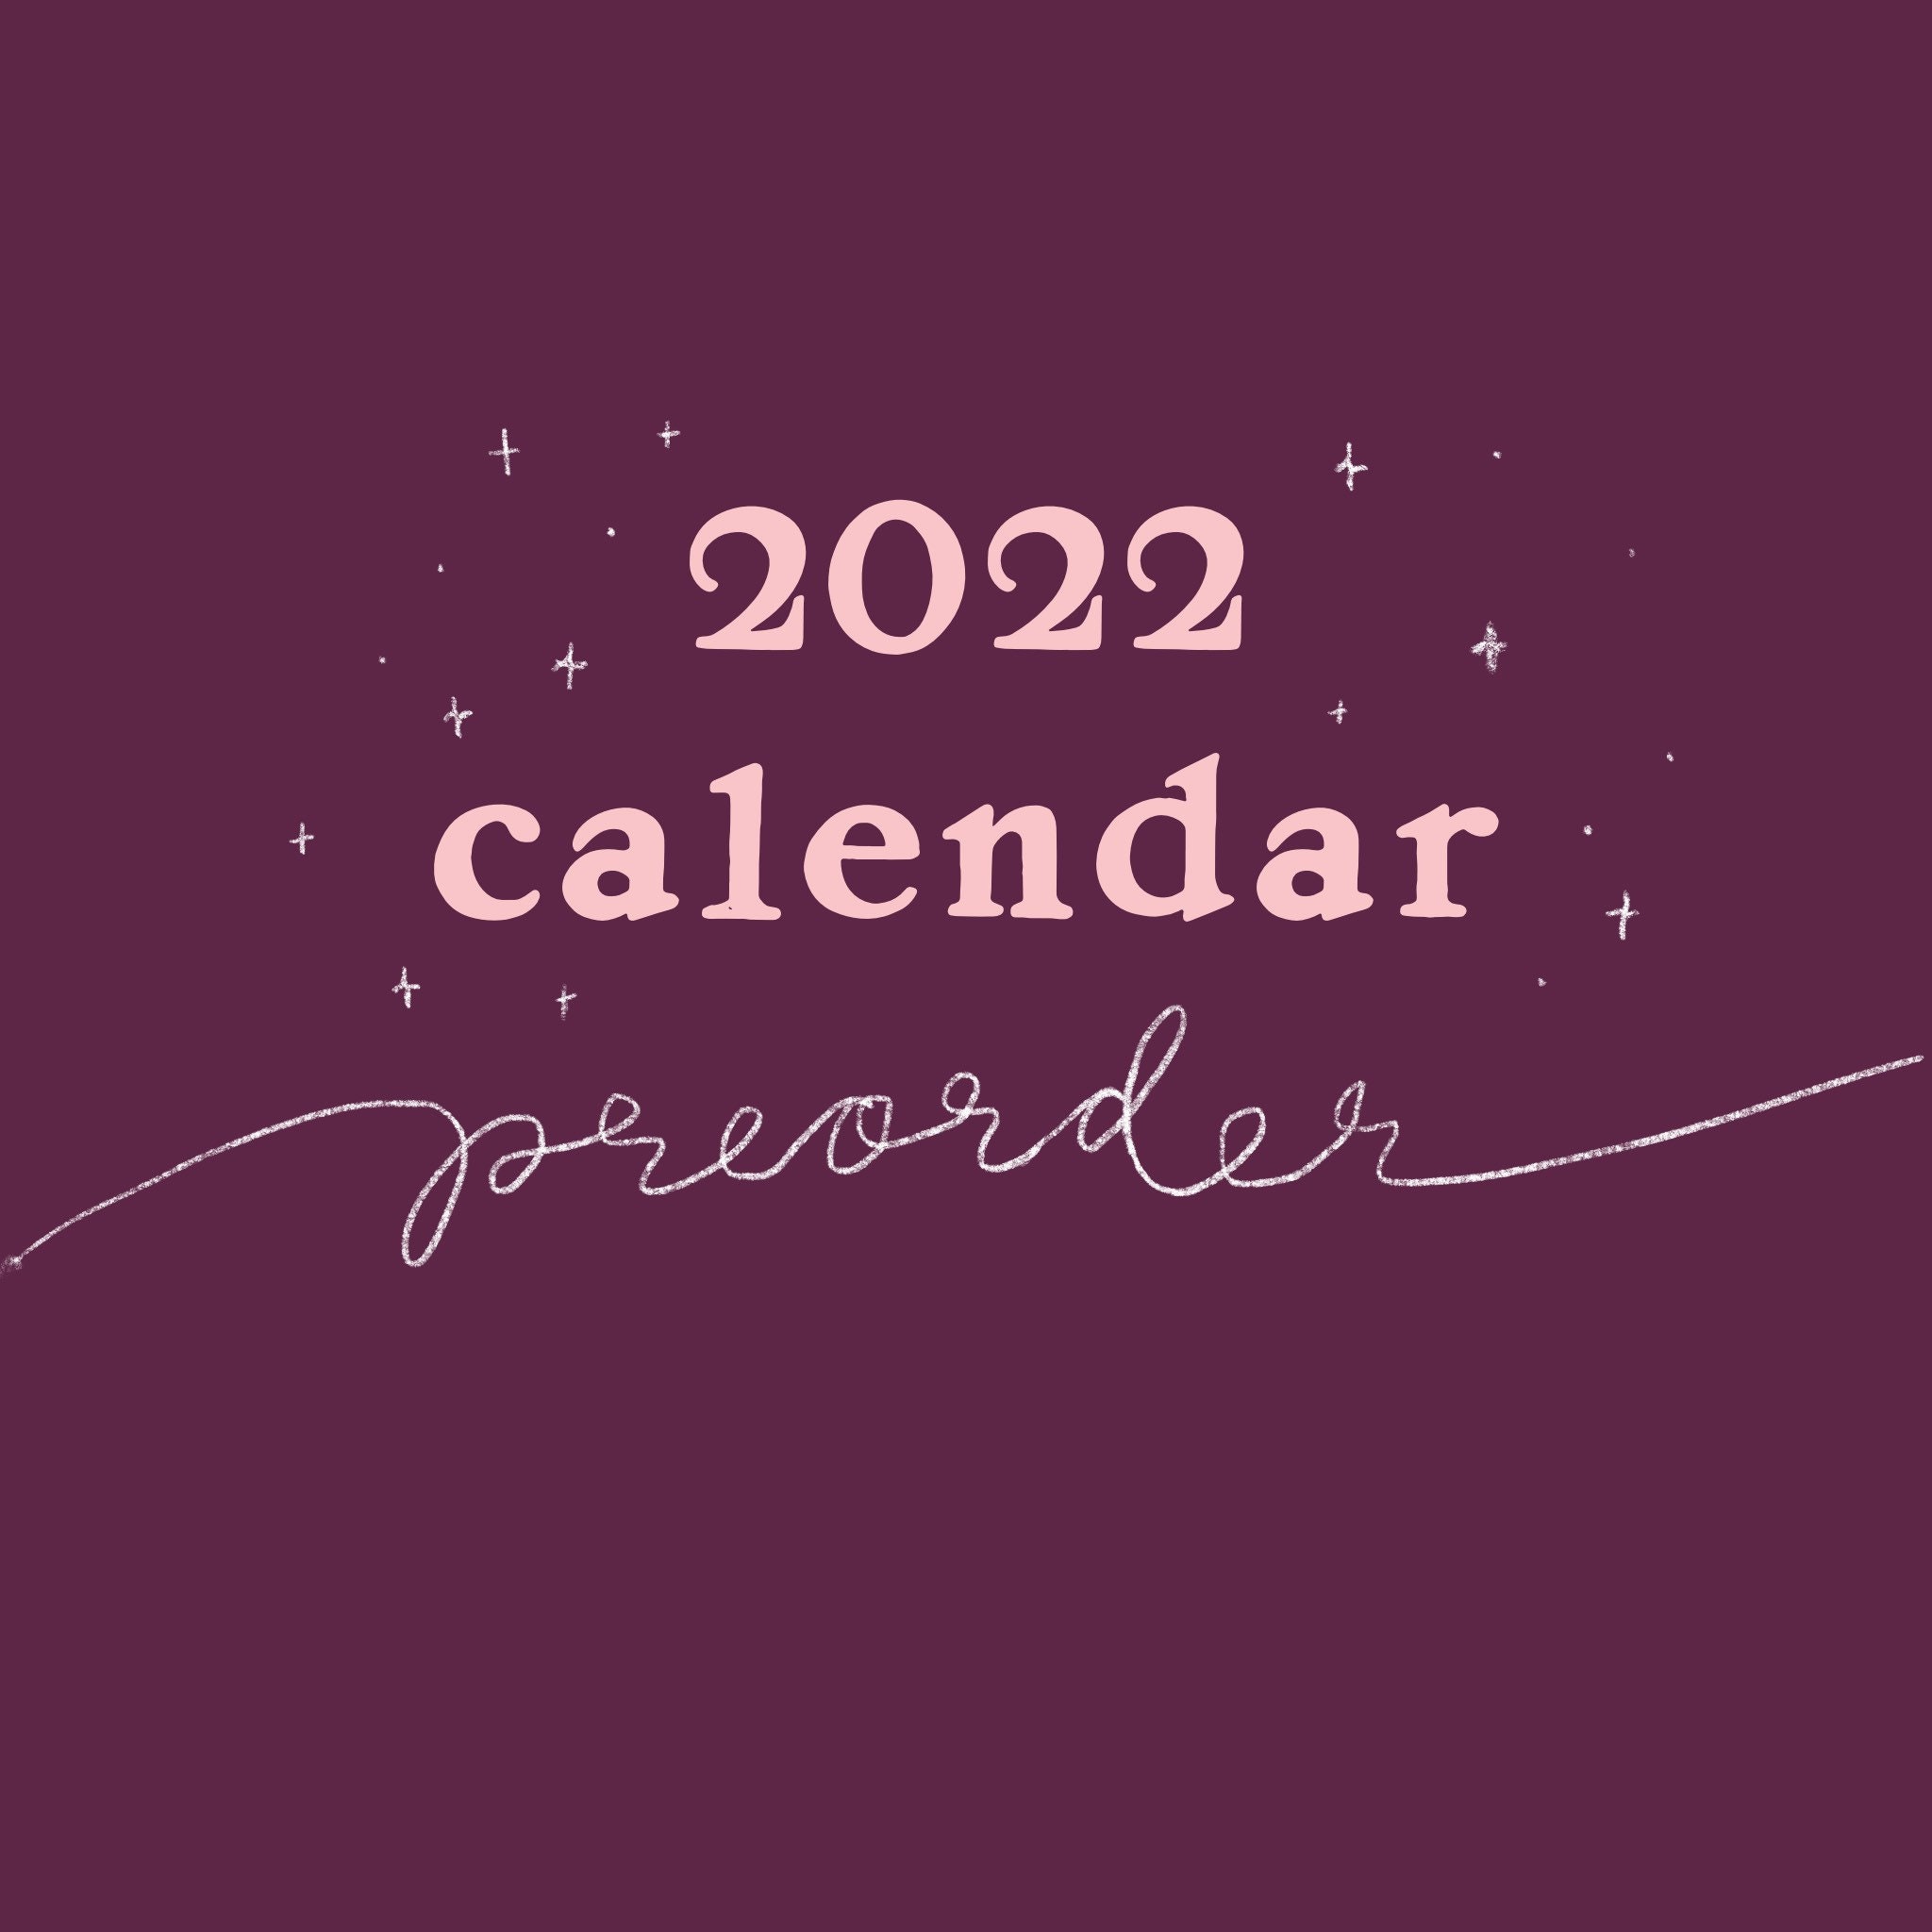 Csu 2022 Calendar 2022 Calendar Preorder | Etsy Uk